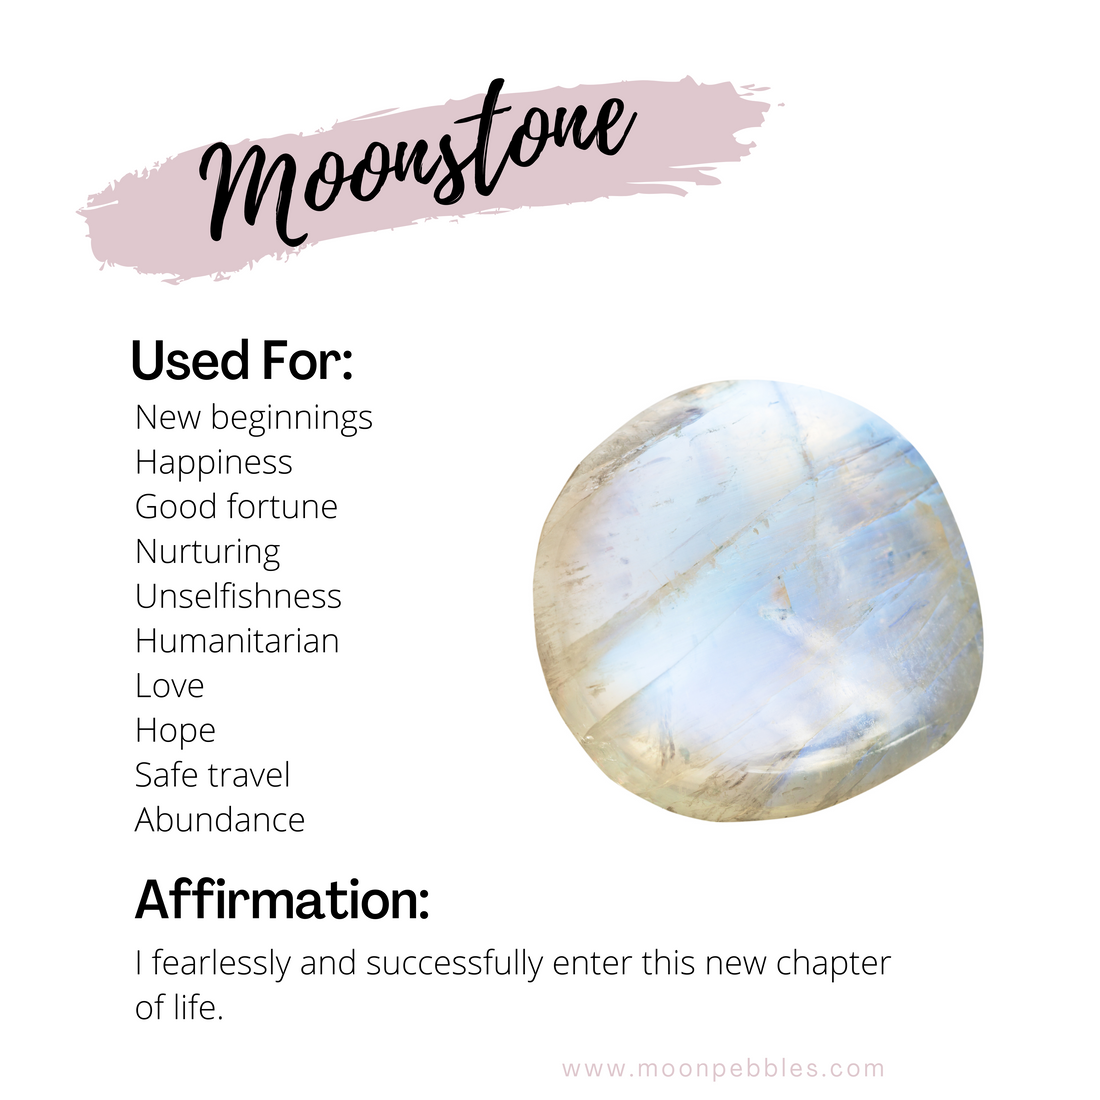 Healing Properties of Moonstone